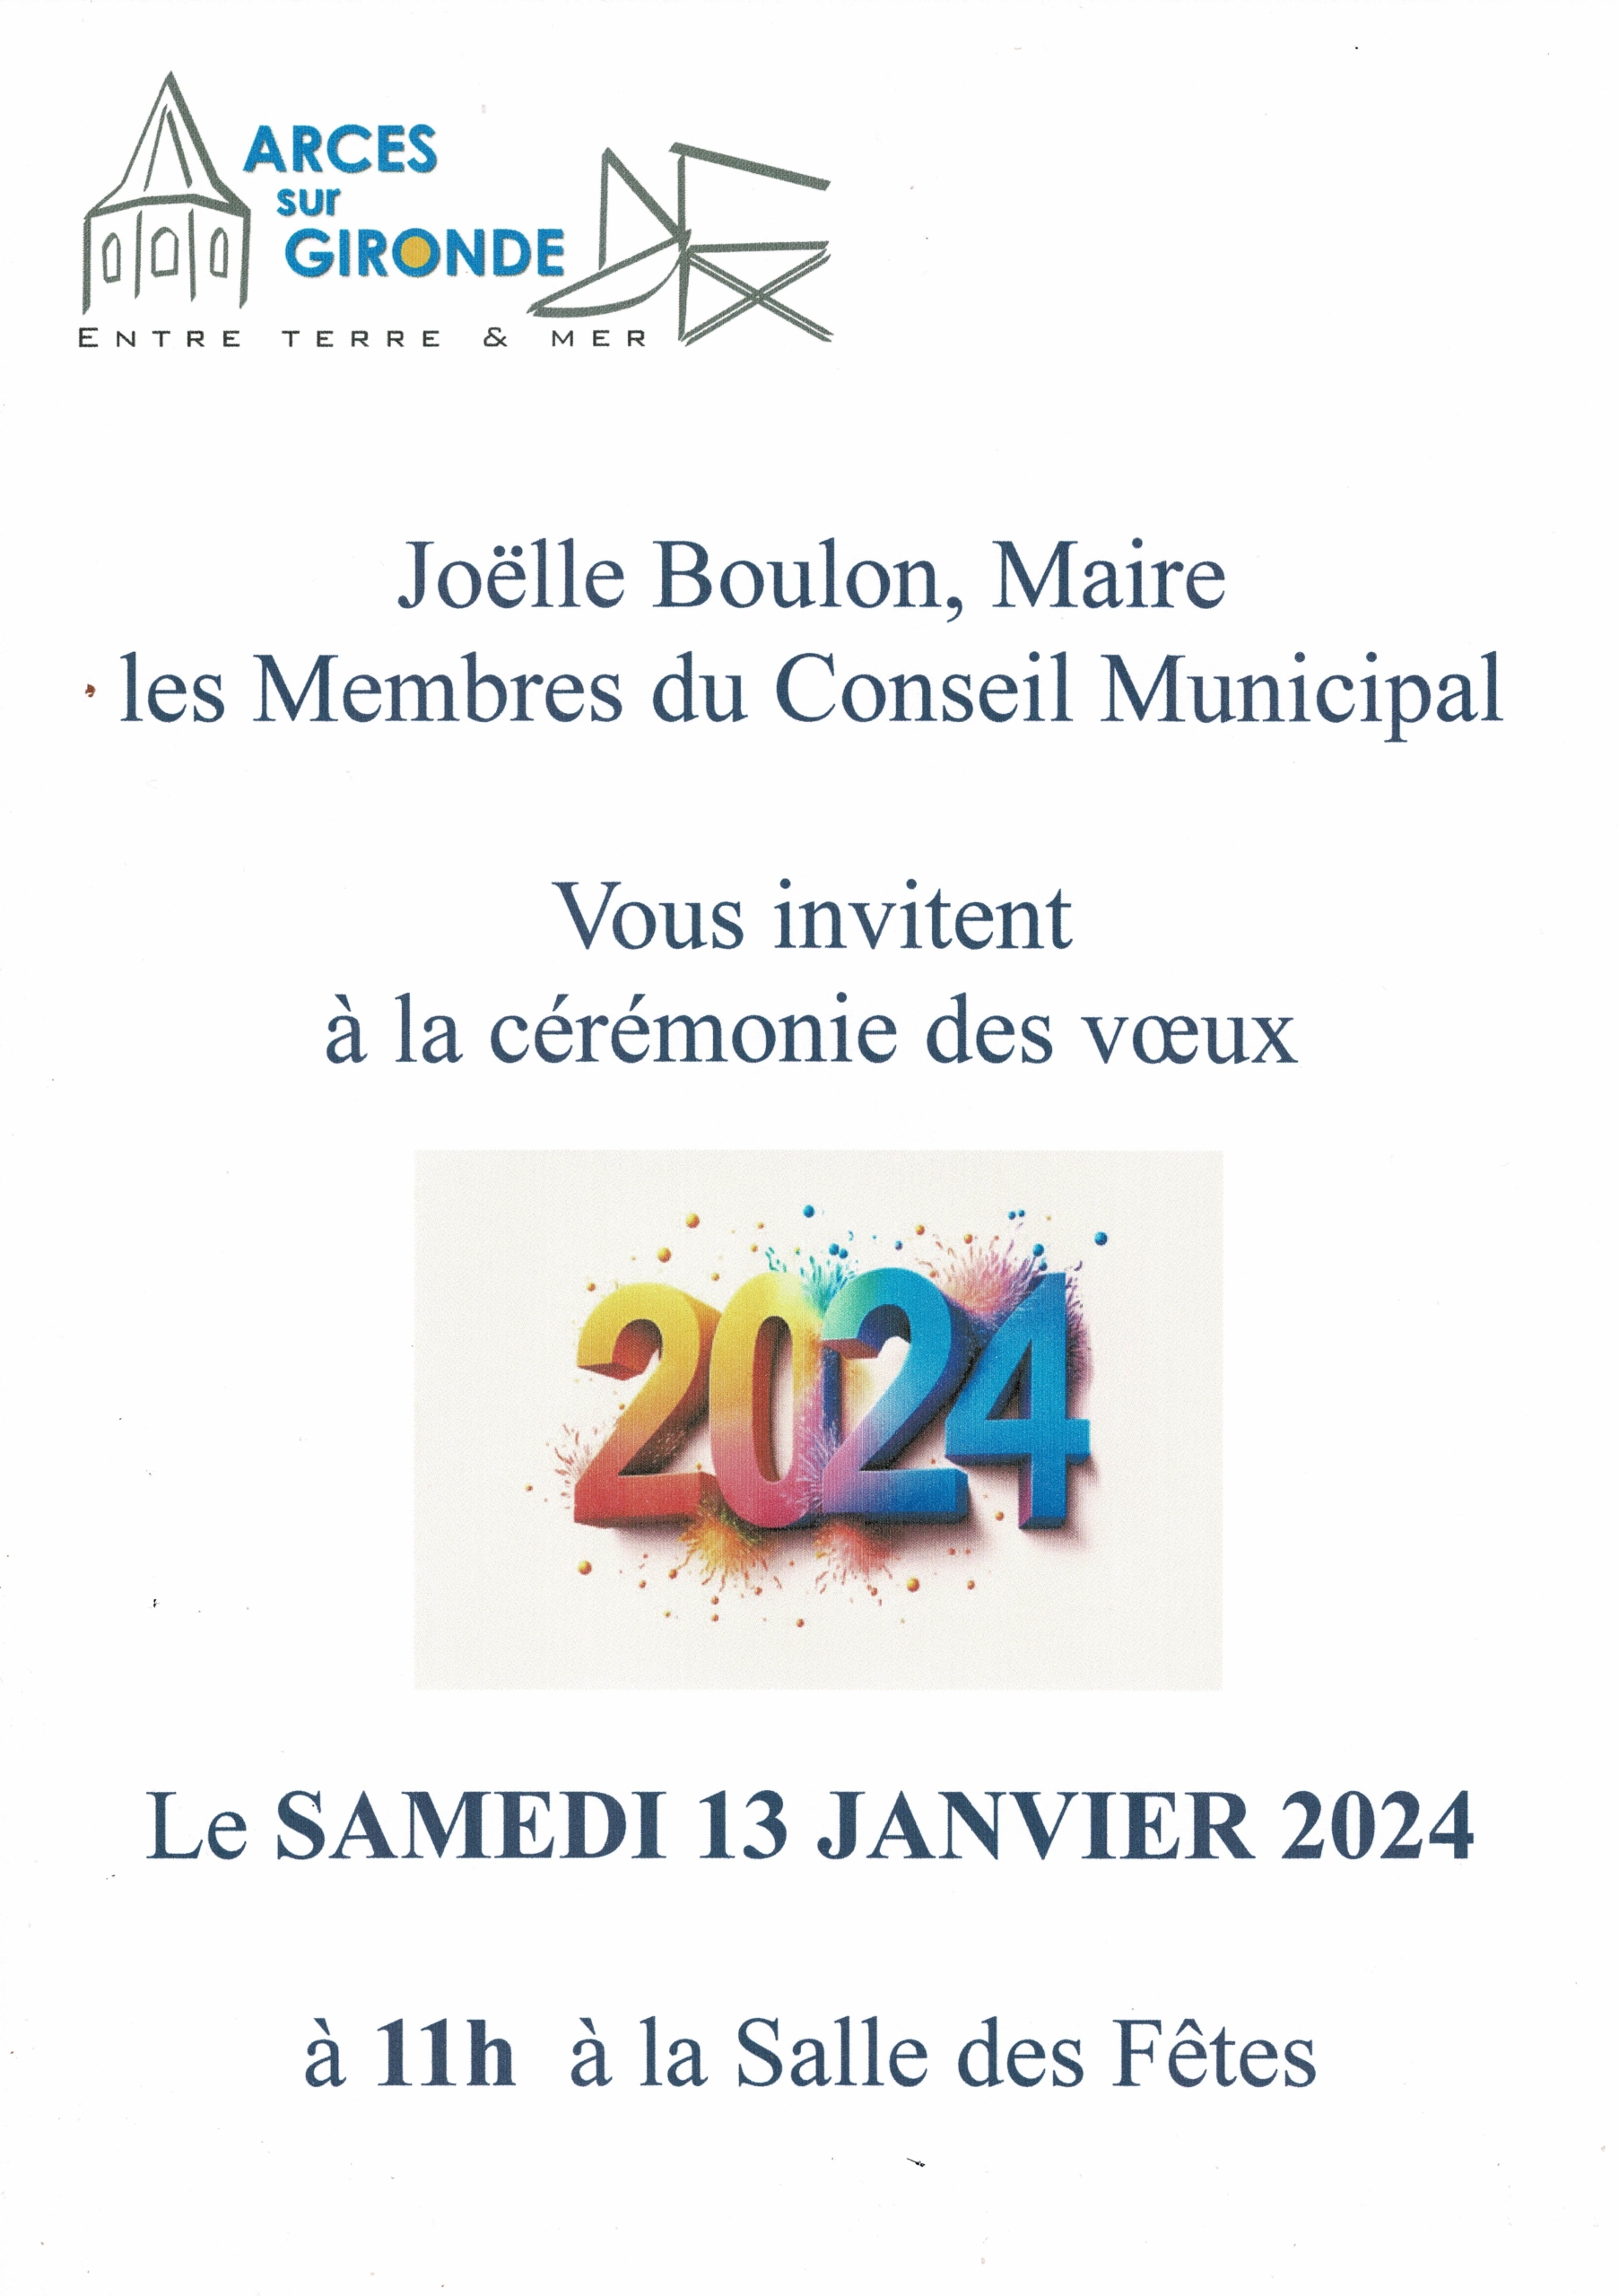 MEILLEURS VŒUX 2024 ! - Actualités - Mairie de l'Arbresle